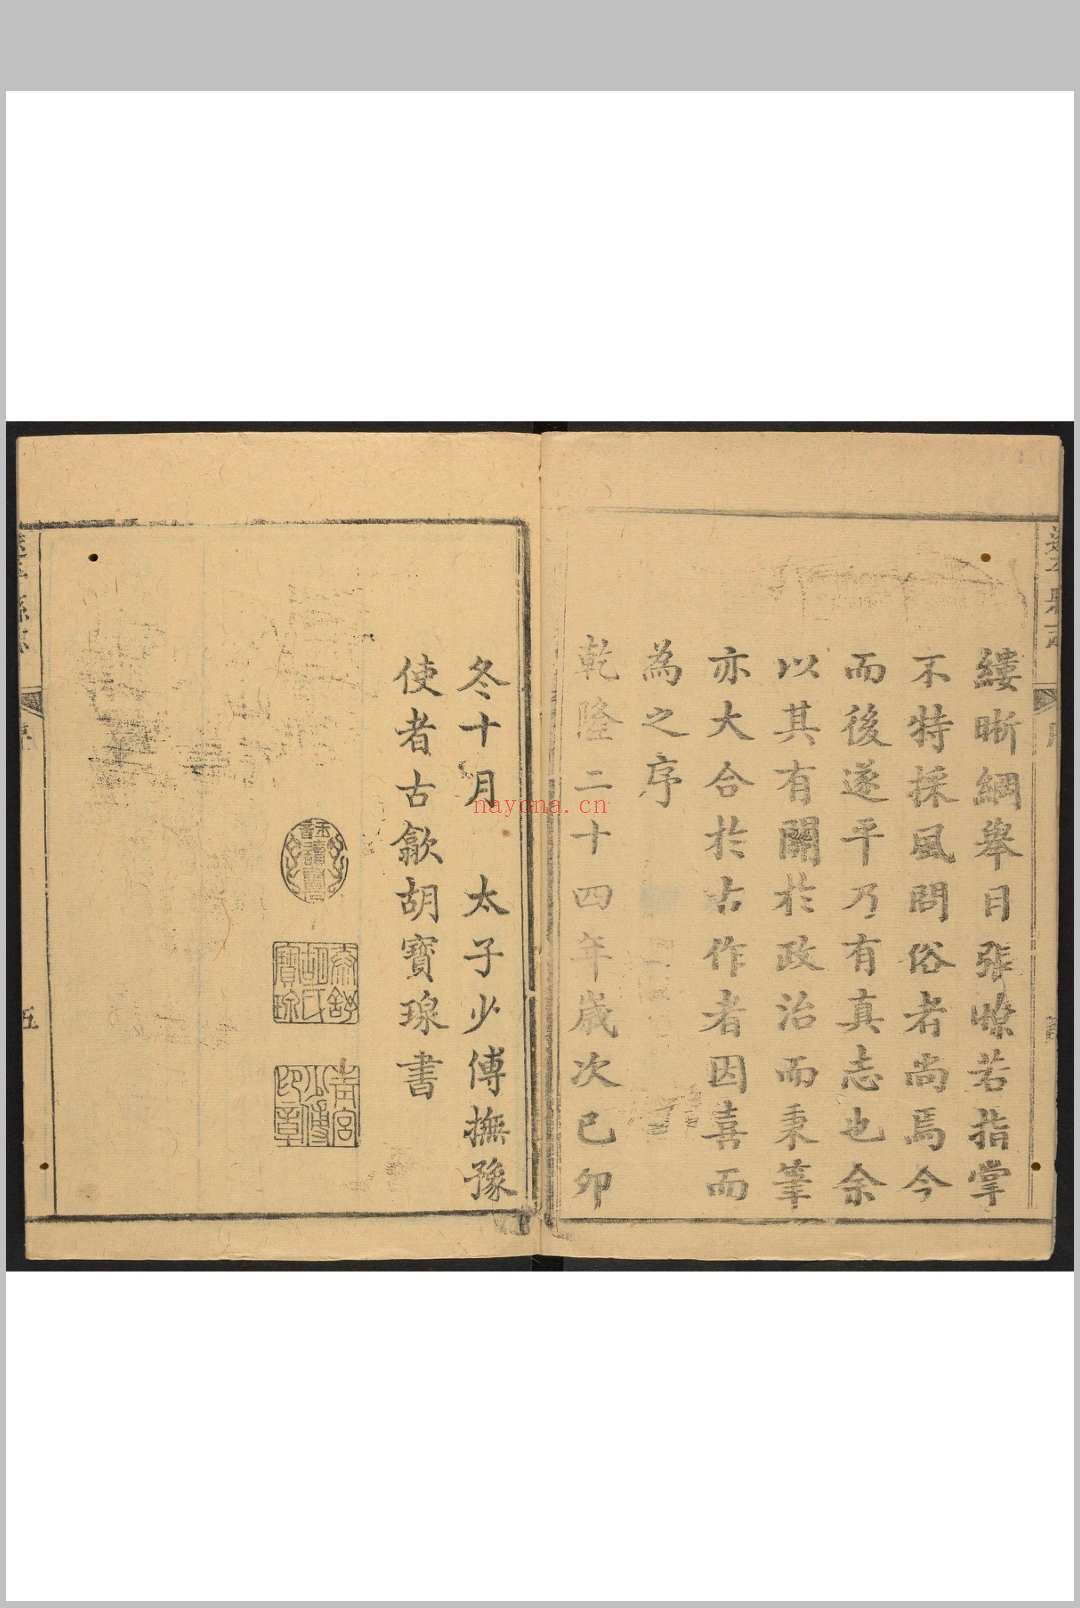 遂平县志  十六卷, 卷首一卷 金忠济修 祝旸纂.清乾隆24年 [1759]